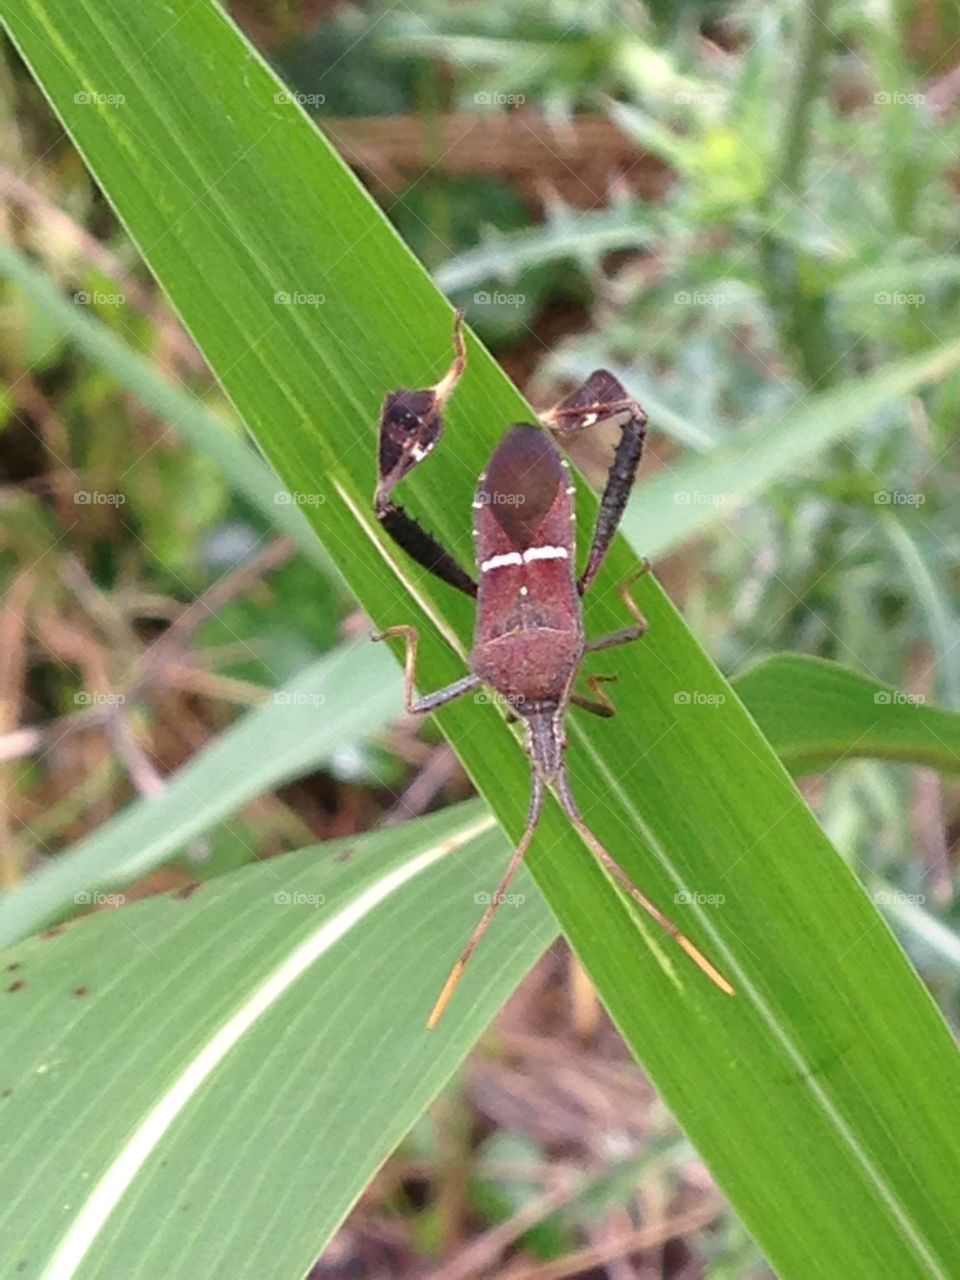 Eastern leaf-footed bug. Bug on a leaf